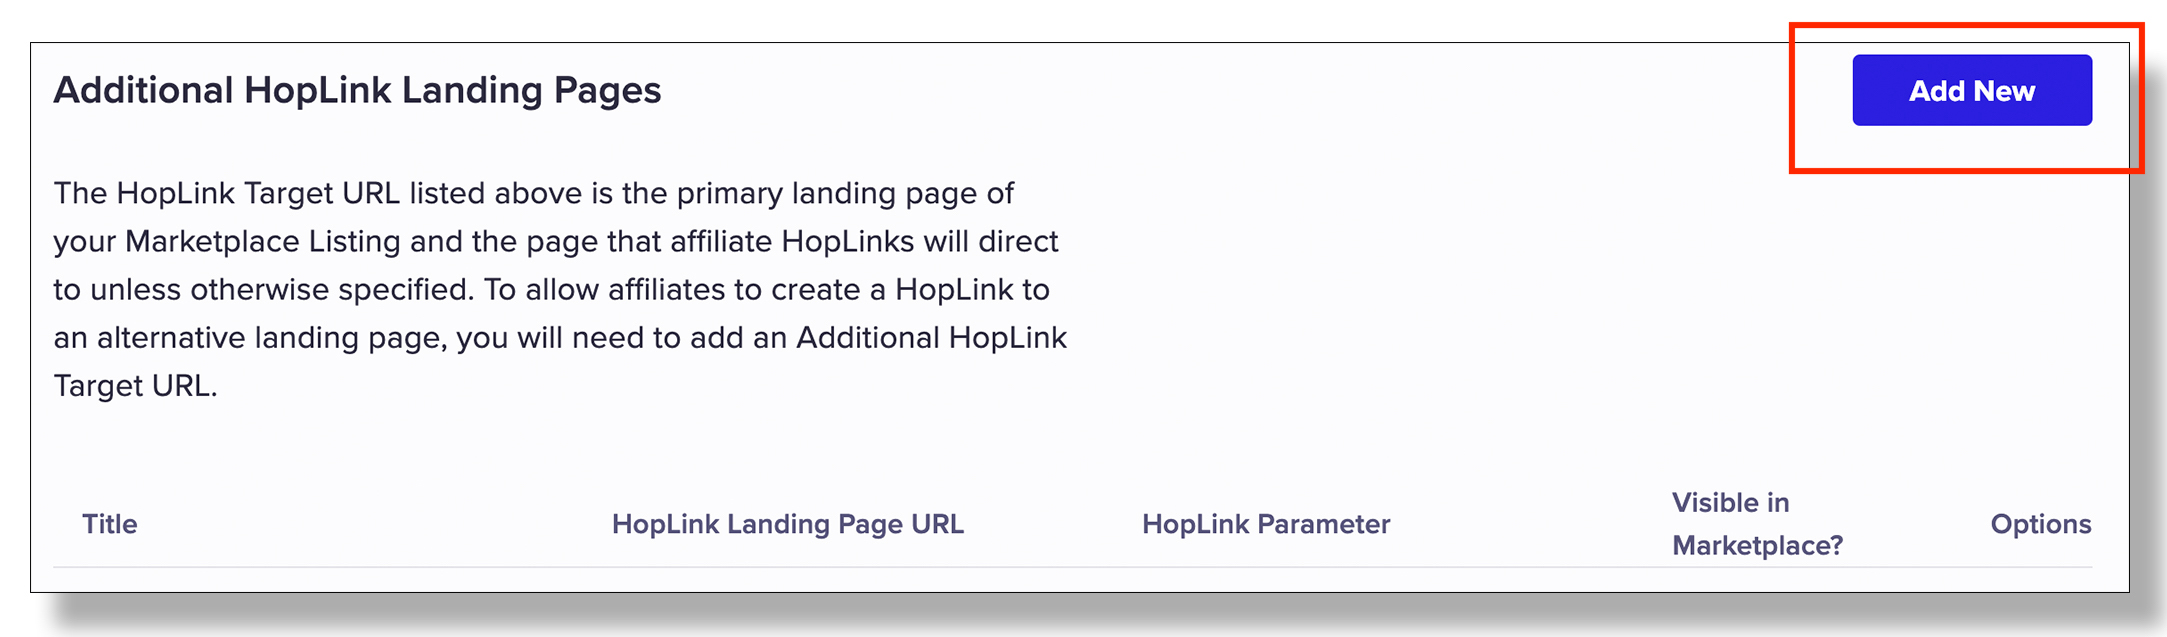 hoplink-target-1.jpg